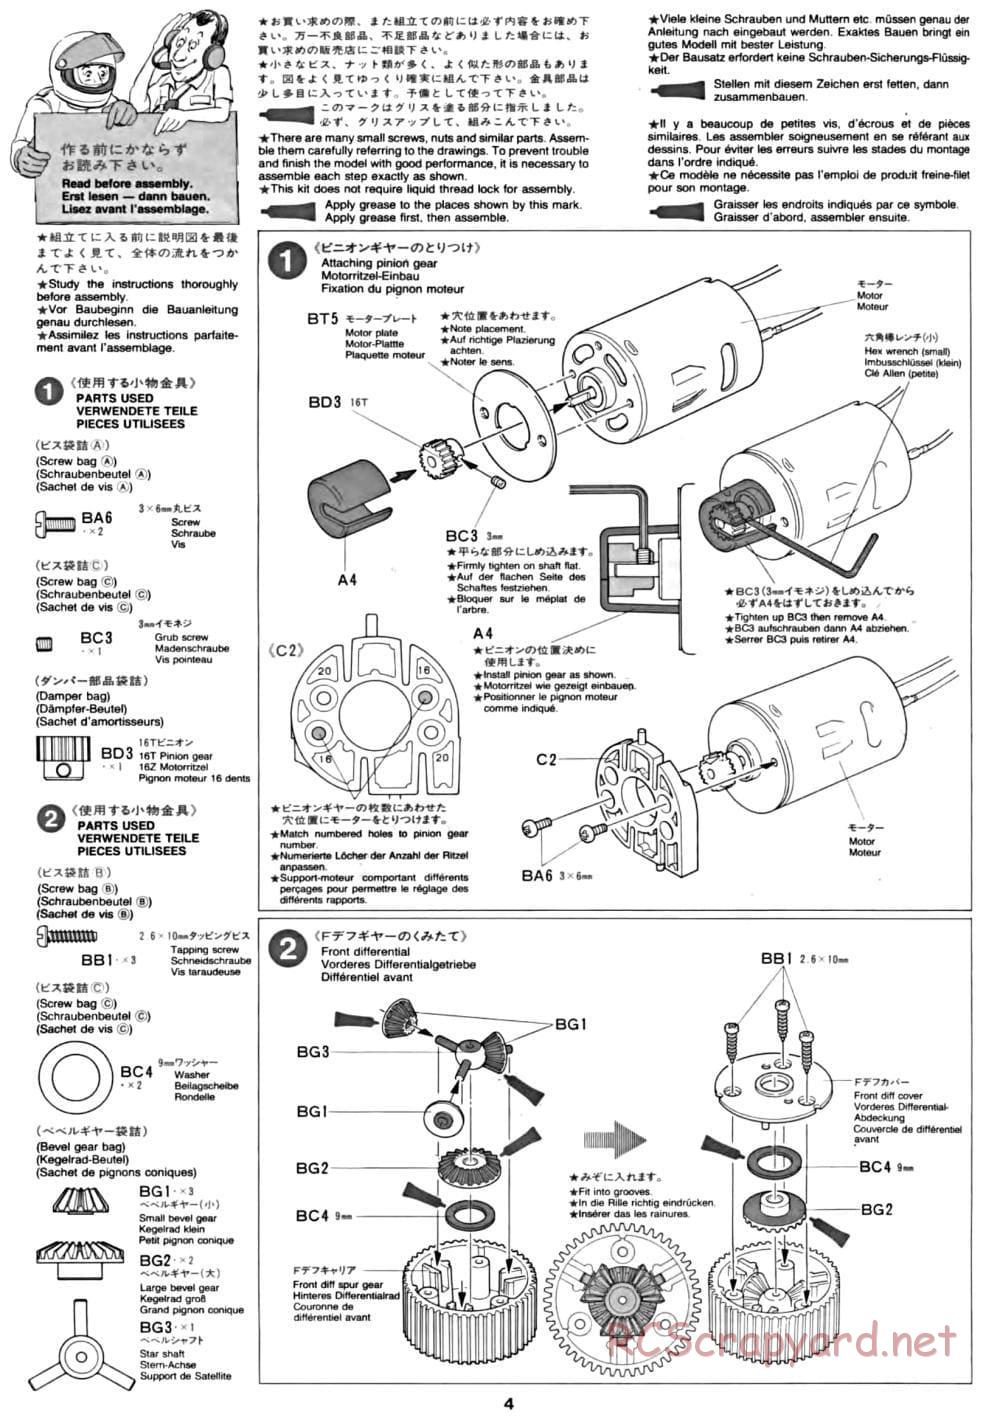 Tamiya - CC-01 Chassis - Manual - Page 4